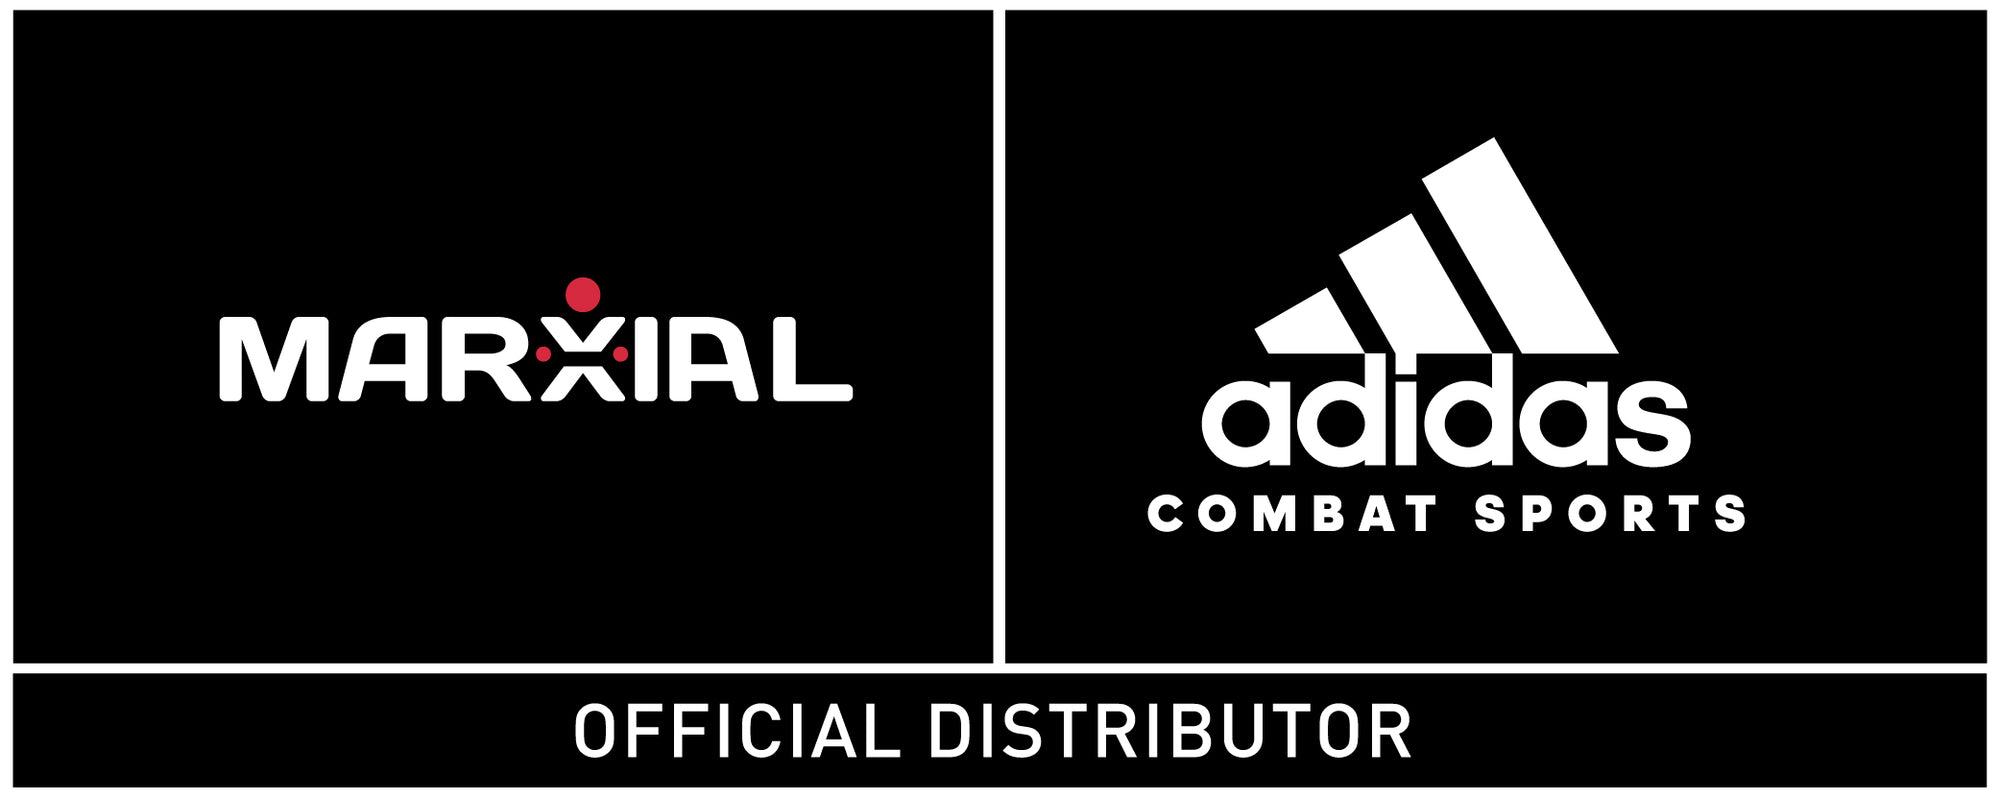 MARXIAL: Artes Marciales y Boxeo | Distribuidor Adidas Combat en Perú